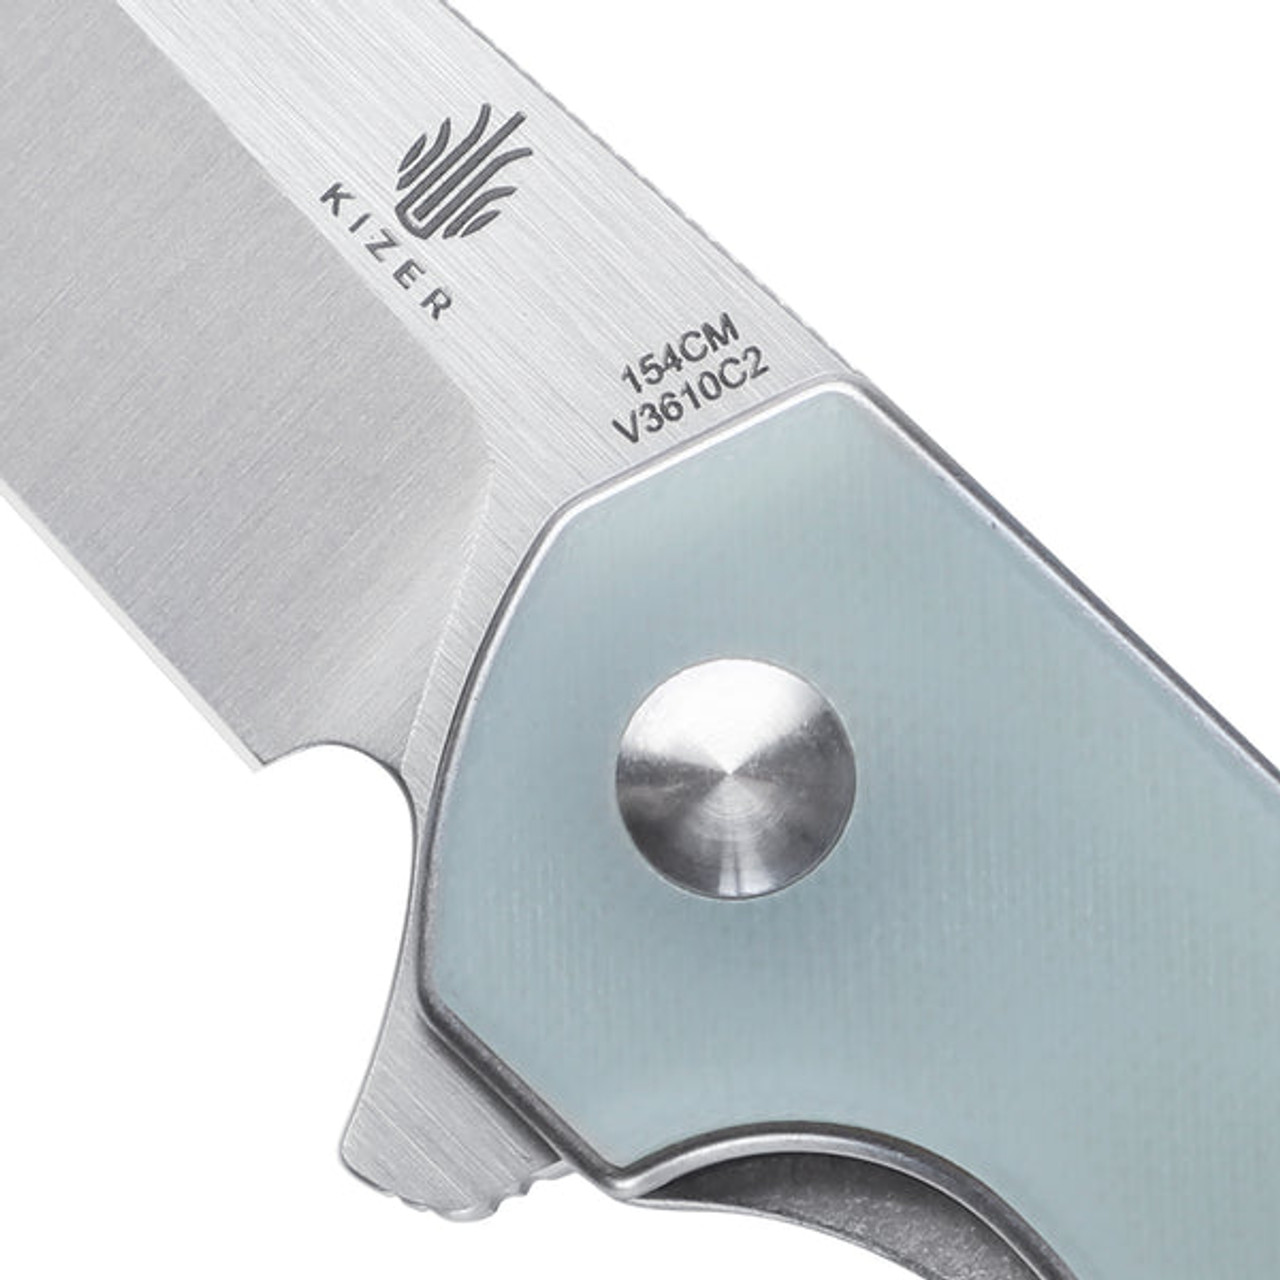 Kizer LP Folding Knife (K3610C2) 3.60 in Satin 154CM, Jade G-10 Handle